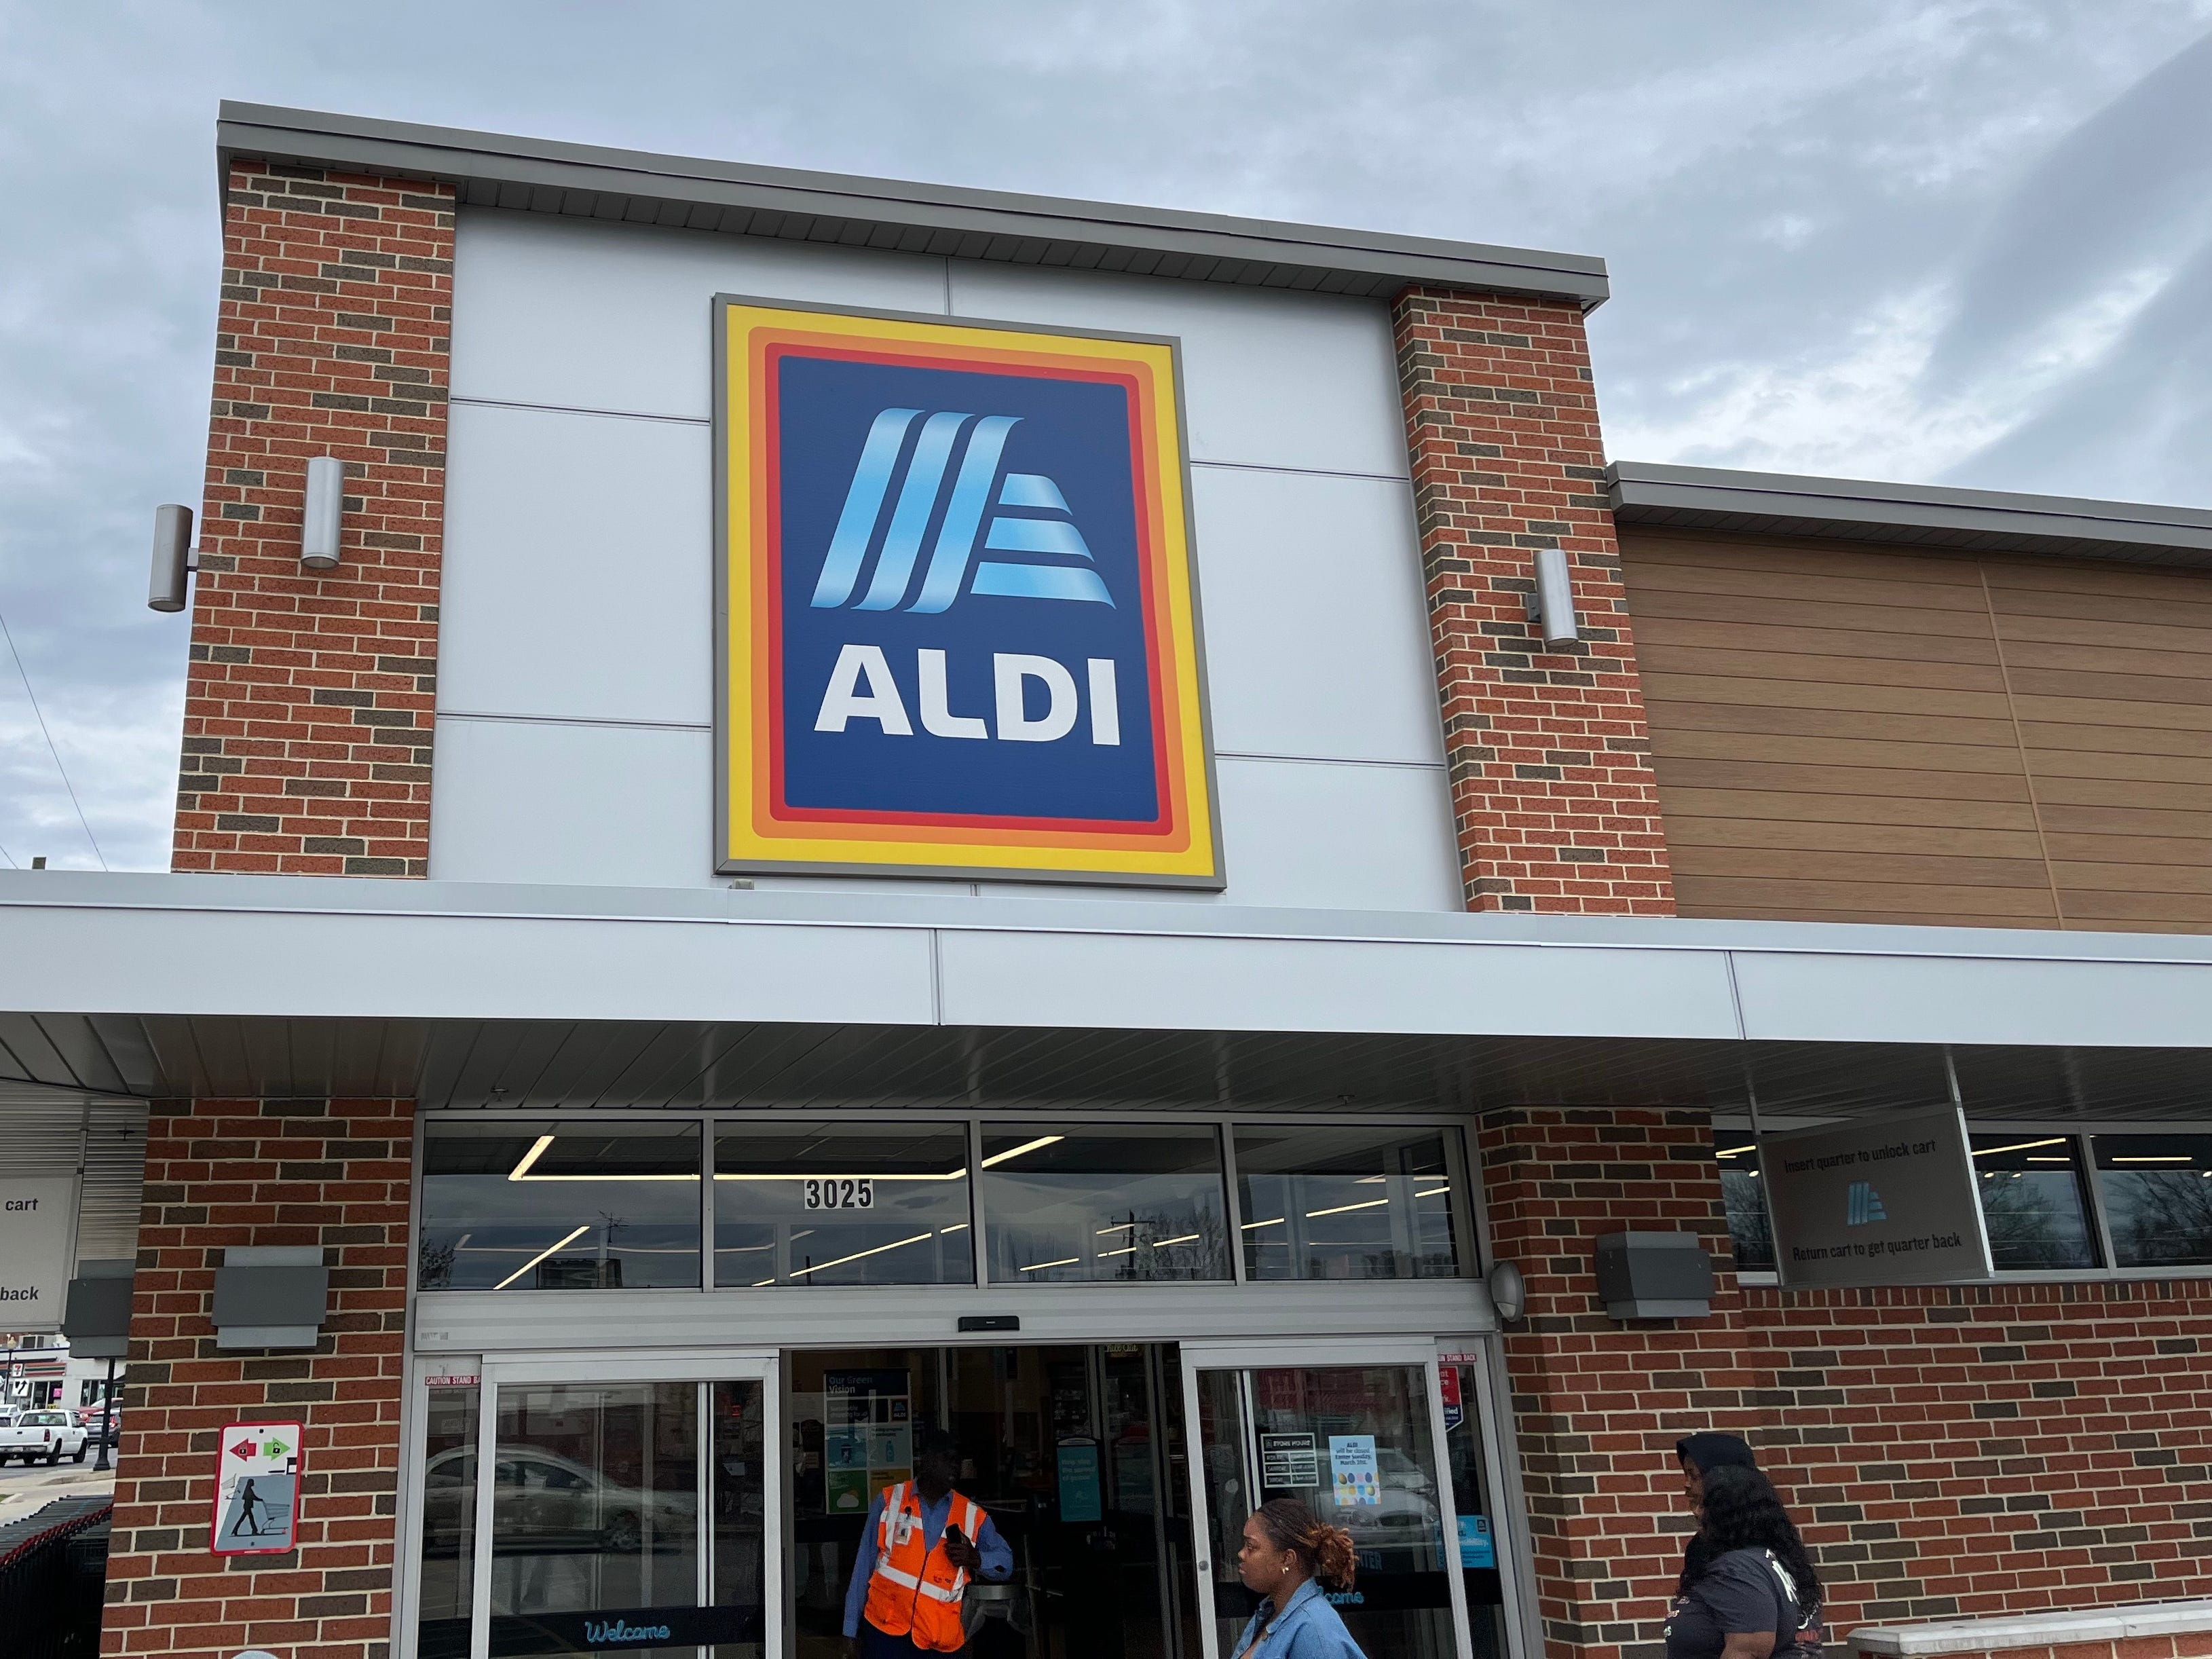 An einem bewölkten Tag in Hyattsville, Maryland, gehen Menschen in ein Aldi-Lebensmittelgeschäft ein und aus.  Über dem Eingang hängt das blau-weiße Aldi-Logo auf einem Schild, links vom Eingang steht eine Reihe Einkaufswagen.